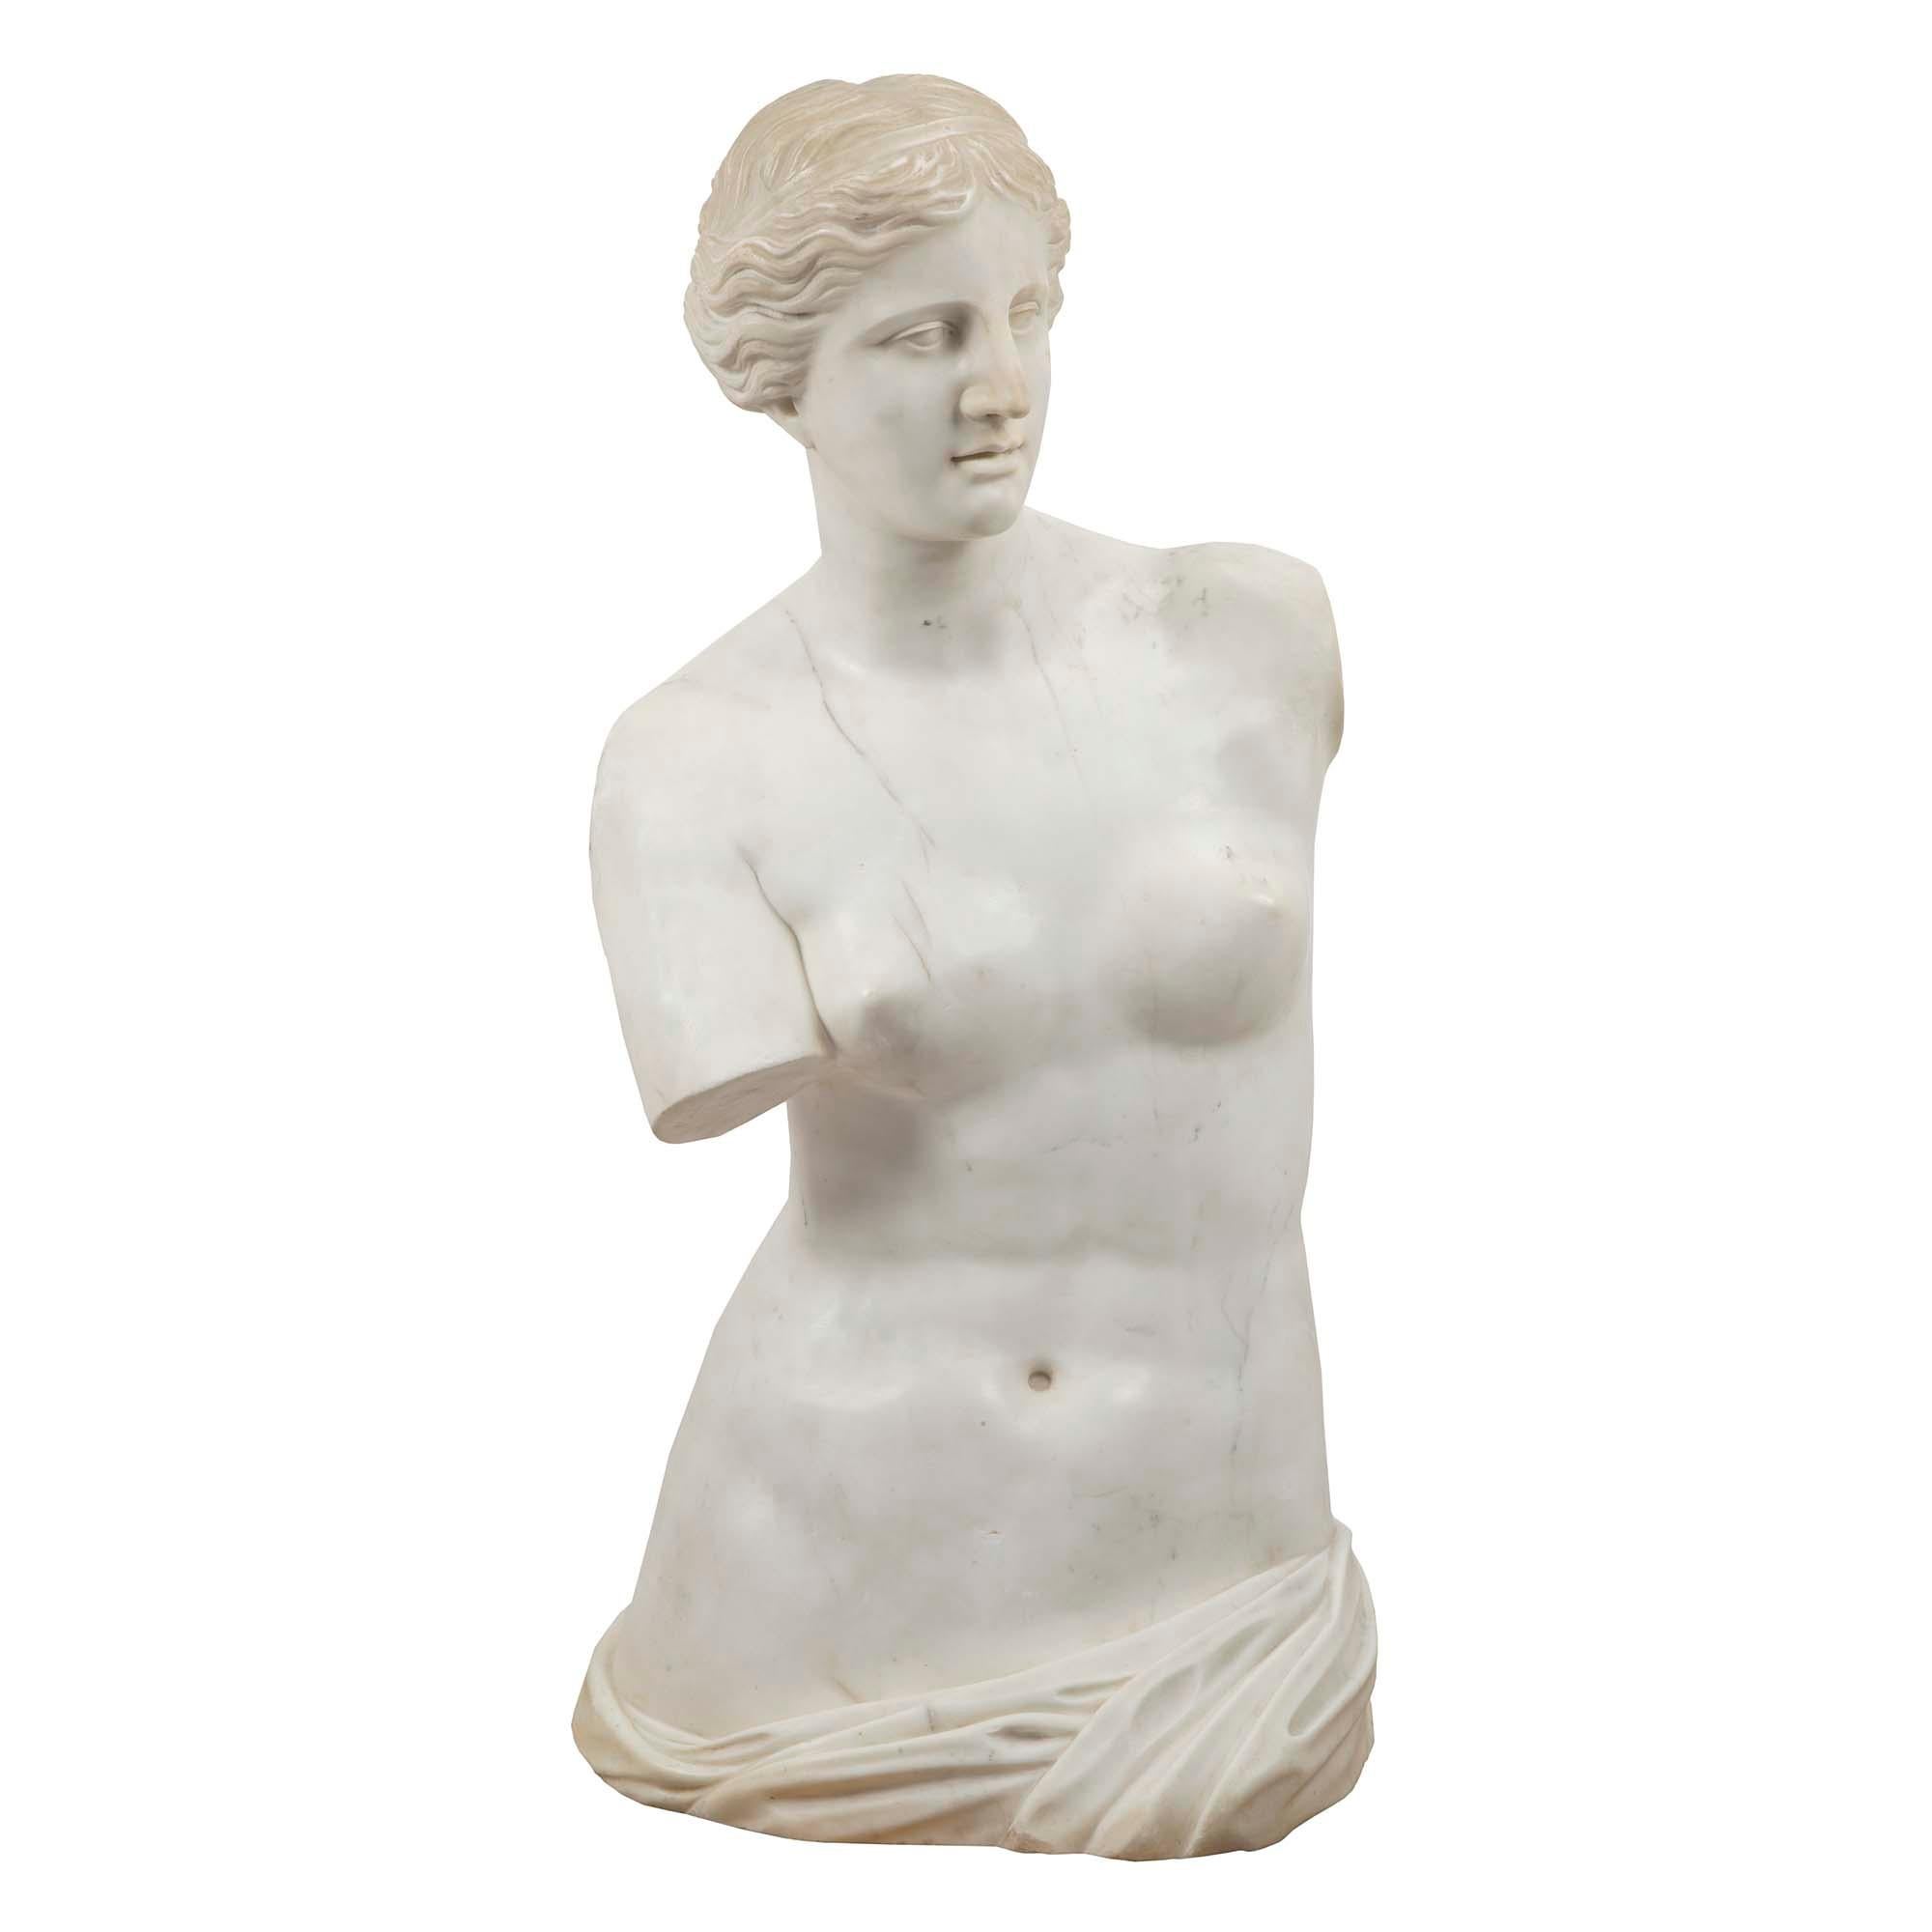 Une étonnante Vénus de Milo en marbre blanc de Carrare du XIXe siècle. Elle est merveilleusement sculptée, avec des proportions saisissantes et une grande attention aux détails. La Vénus de Milo est une ancienne statue grecque créée entre 130 et 100